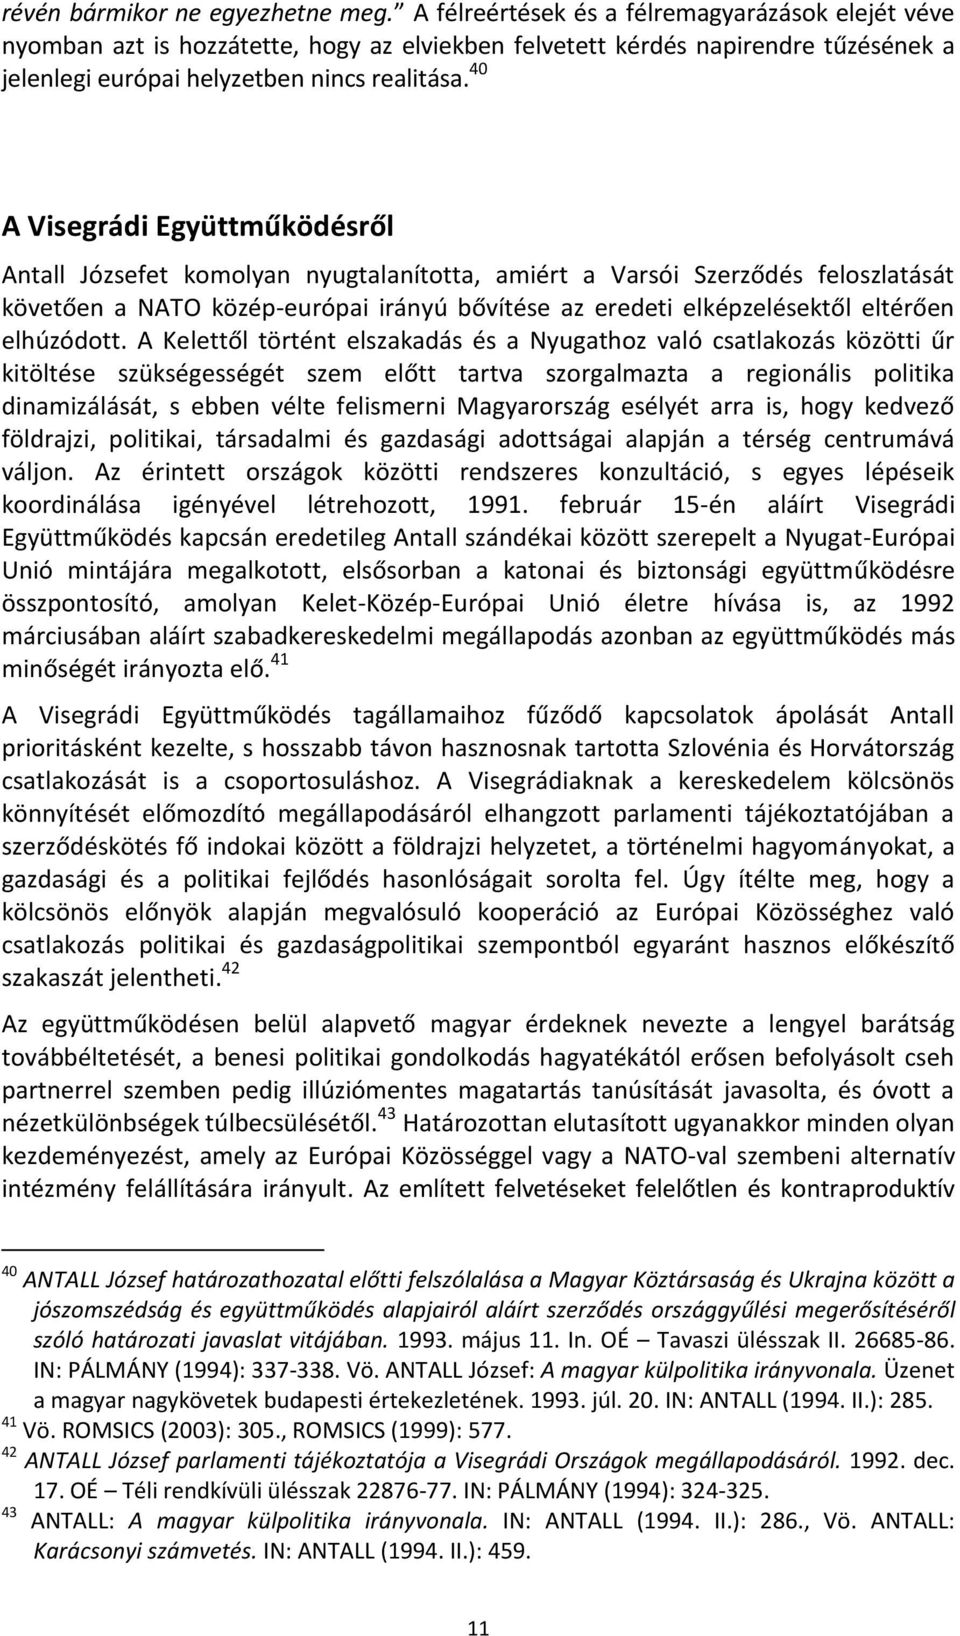 40 A Visegrádi Együttműködésről Antall Józsefet komolyan nyugtalanította, amiért a Varsói Szerződés feloszlatását követően a NATO közép-európai irányú bővítése az eredeti elképzelésektől eltérően